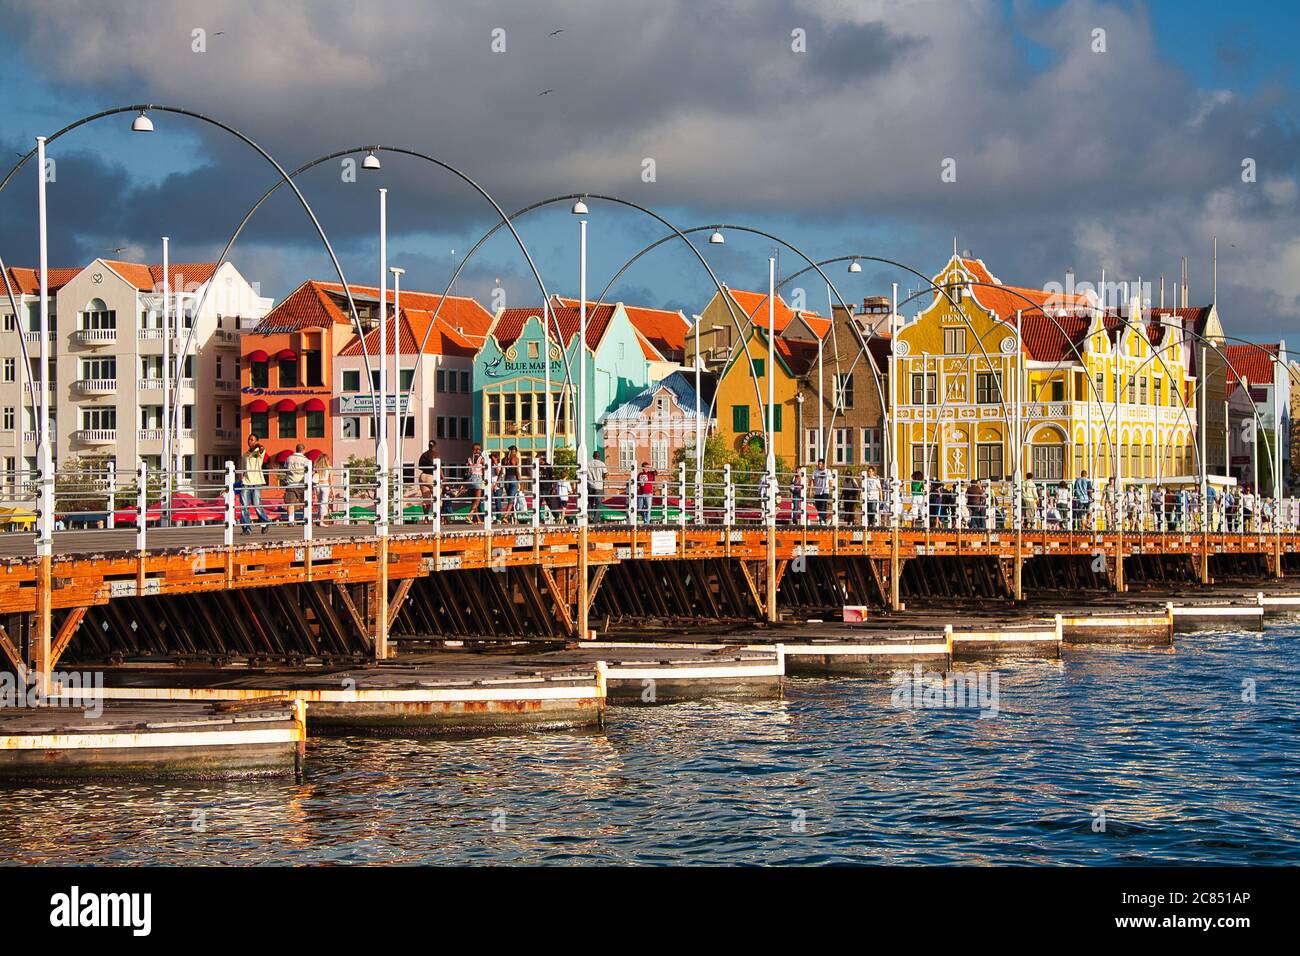 Menschen, die über die Queen Emma Brücke mit typisch holländischen Gebäuden im Hintergrund, Willemstat, Curacao, Karibik, West Indies Stockfoto